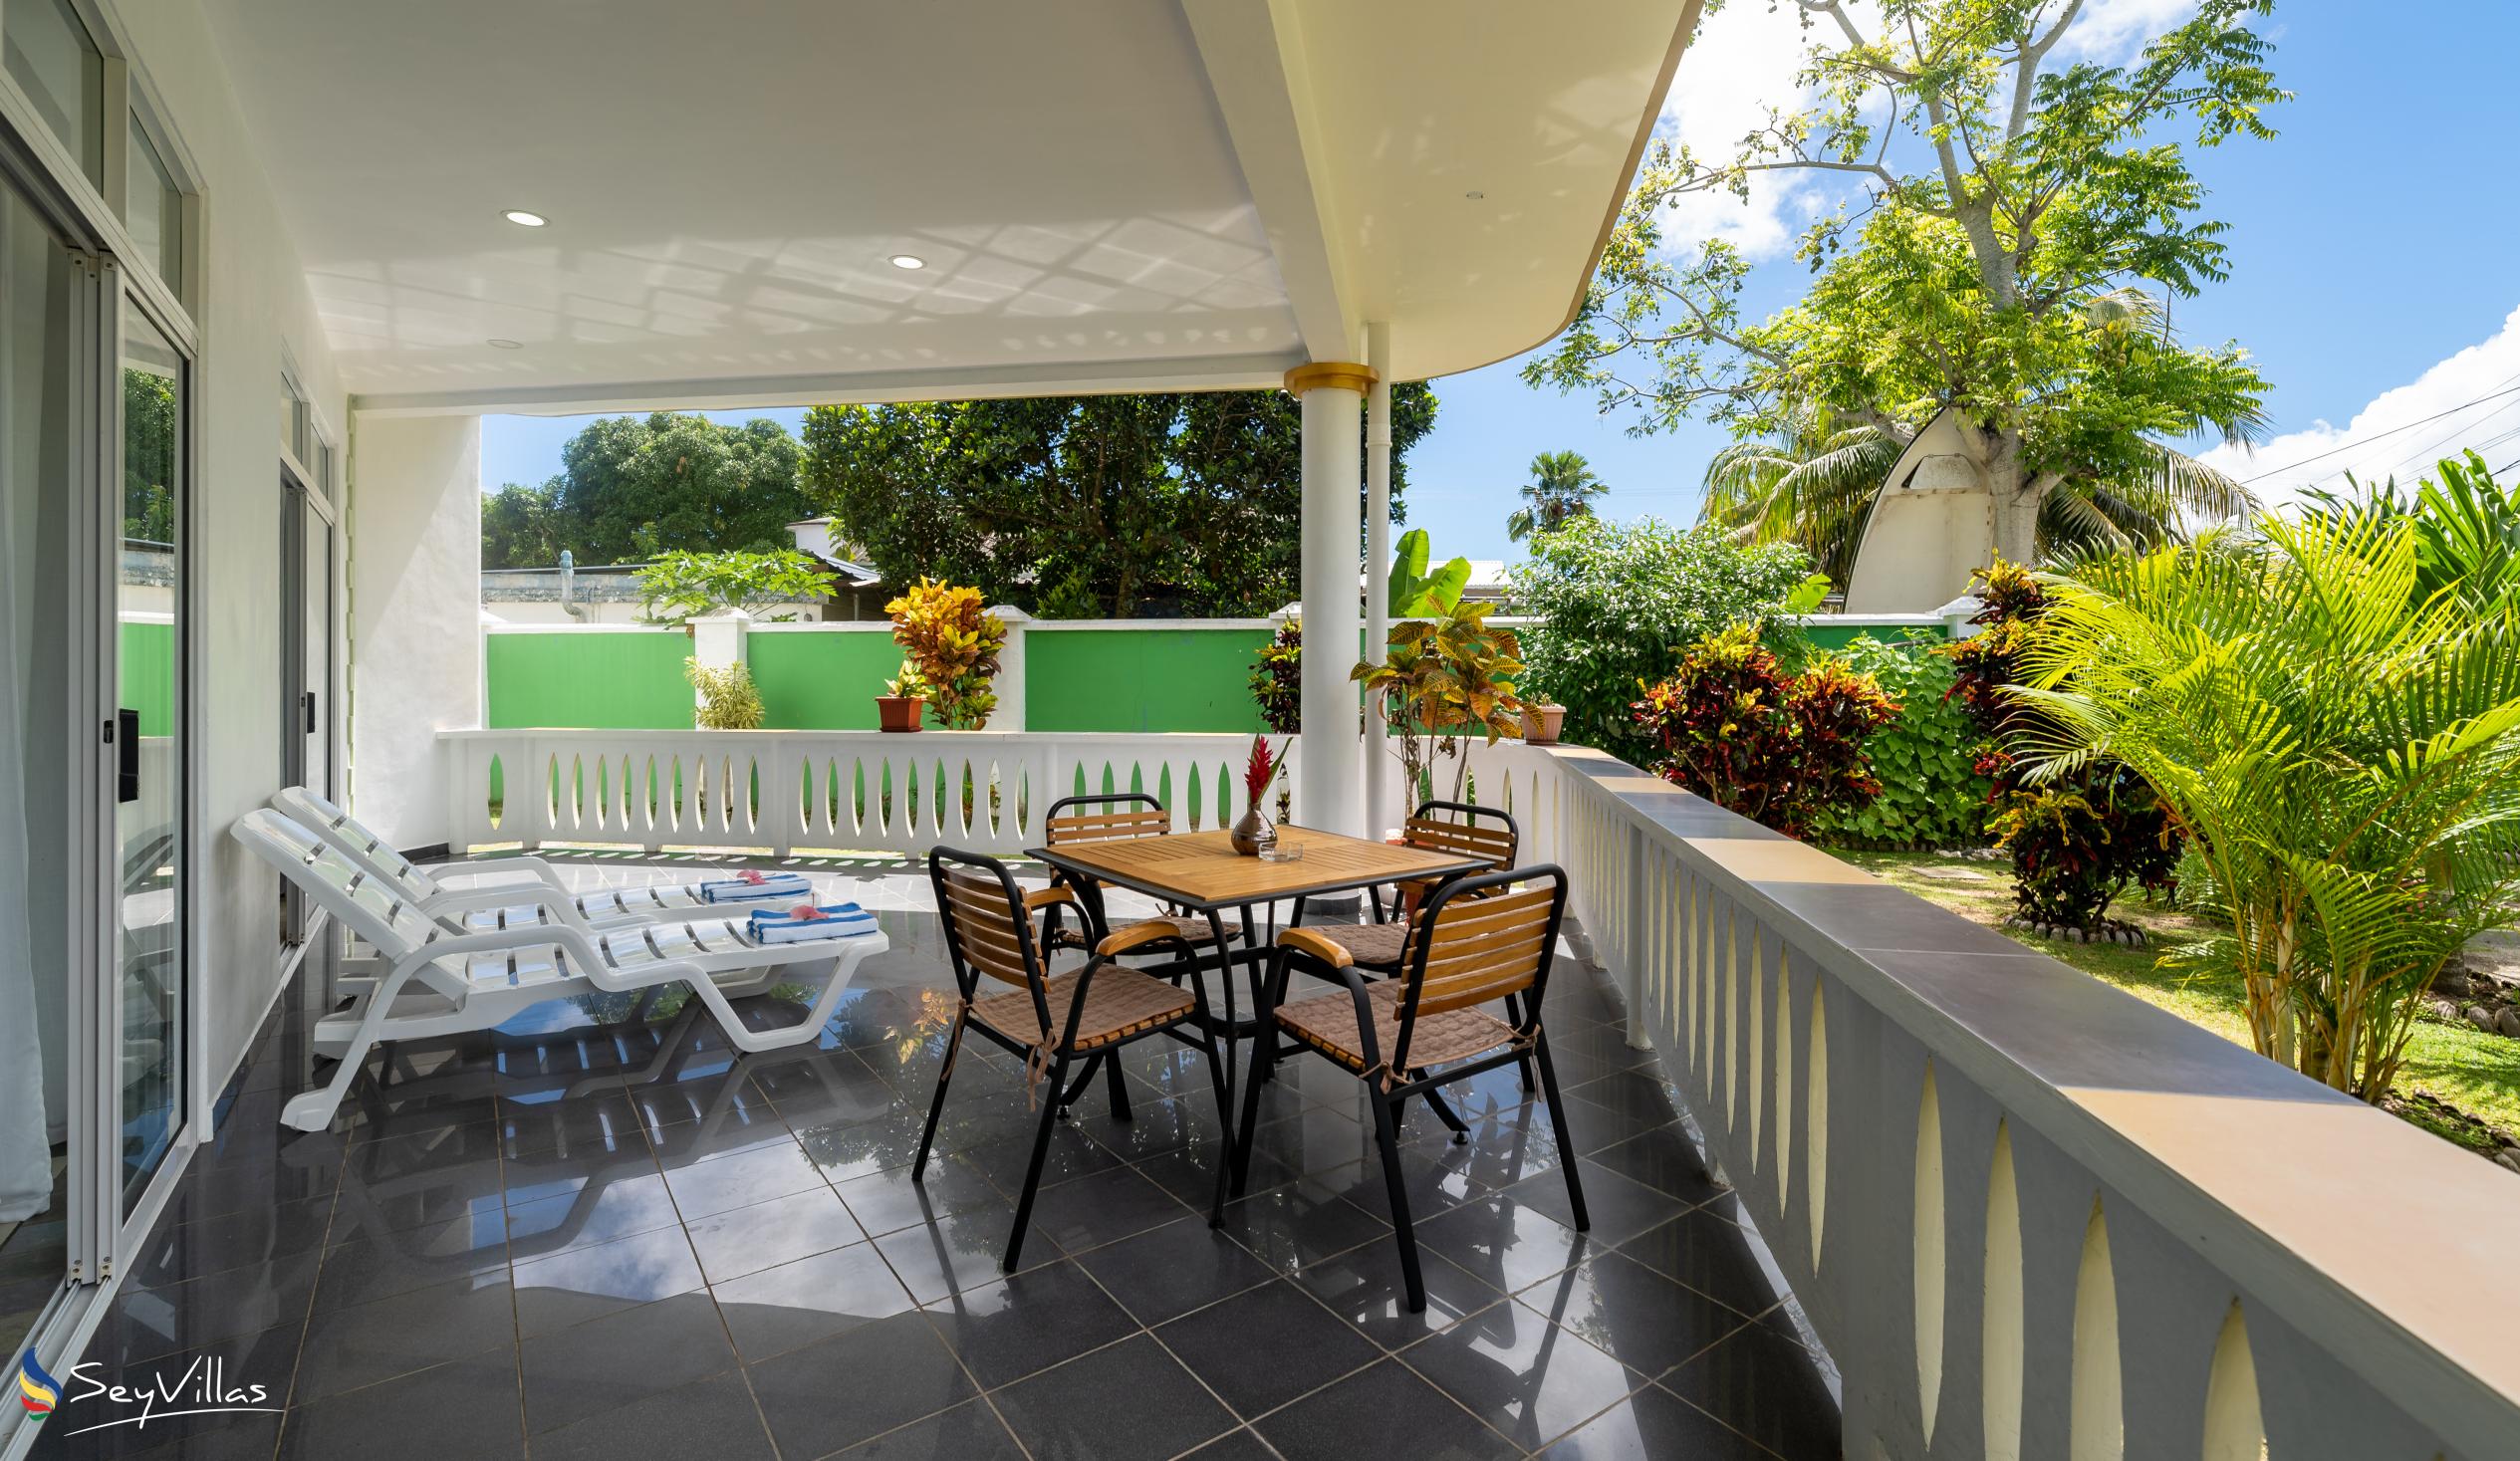 Foto 48: 340 Degrees Mountain View Apartments - Appartamento con vista sul giardino - 2 Camere - Mahé (Seychelles)